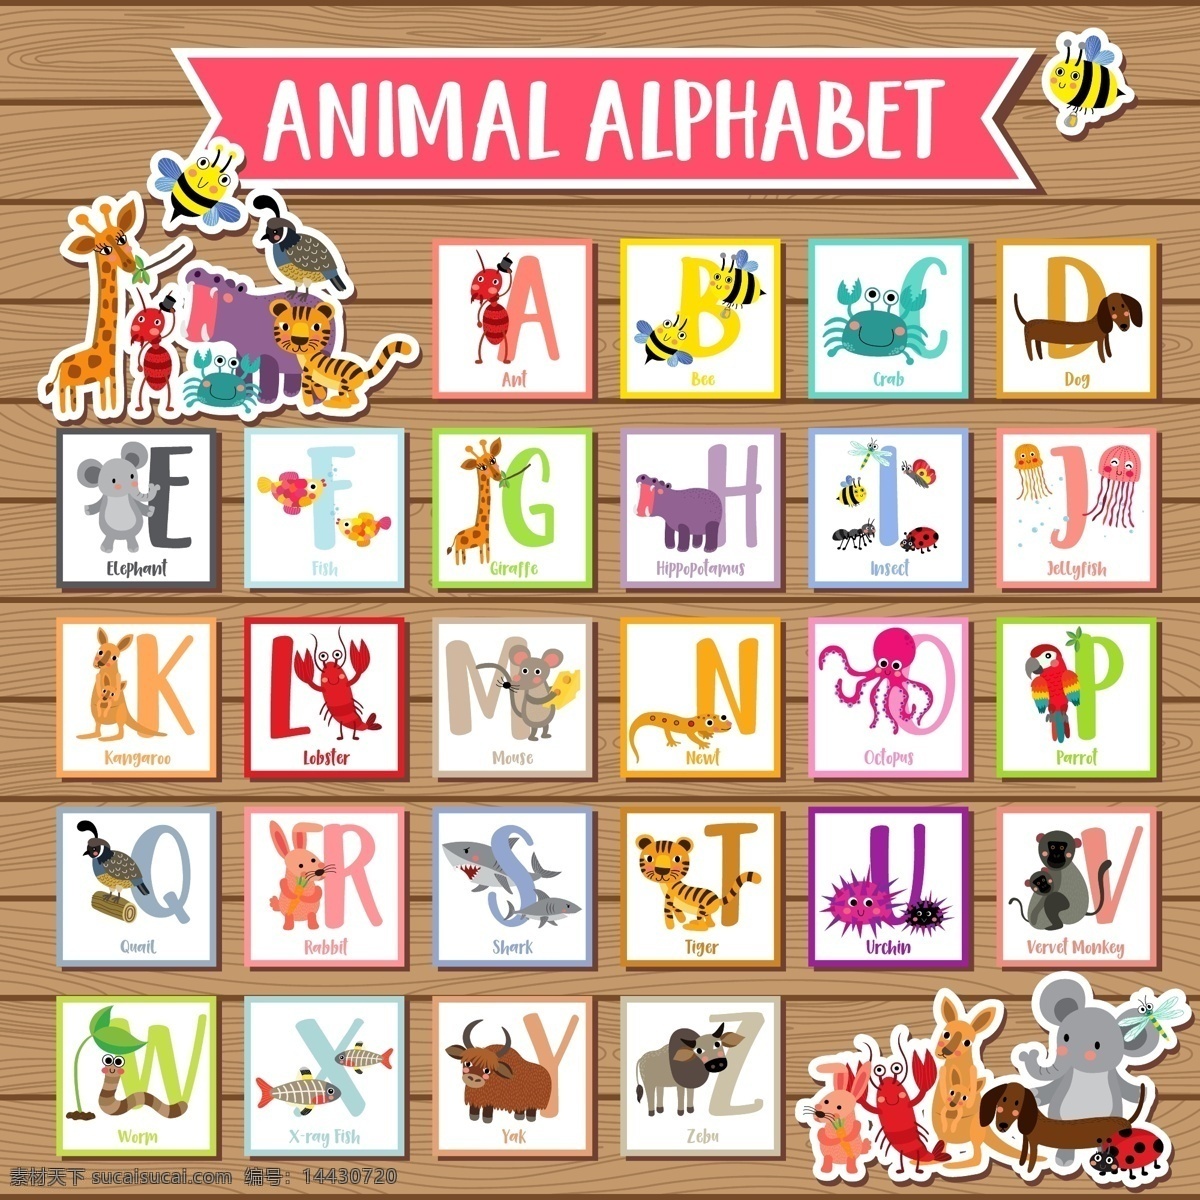 动物 英文 字母 卡通 儿童 动物字母 动物字体 英文字母 动物英文字母 彩色动物 彩色字母 卡通字母 木板木纹背景 可爱动物 儿童动物 生物世界 野生动物